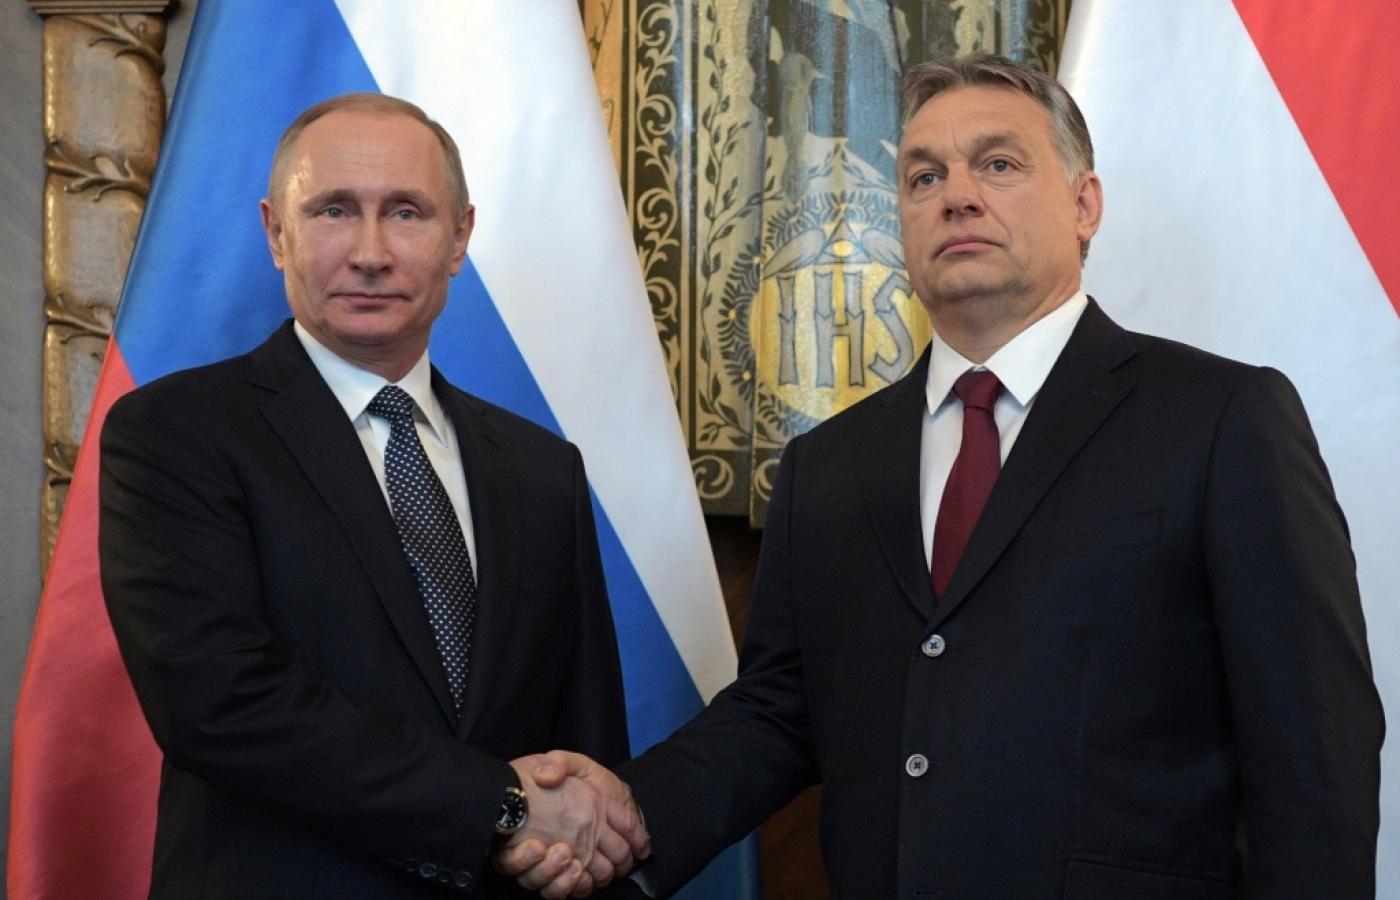 Spotkanie Orbana z Putinem. Budapeszt buduje przyjazne relacje z Rosją